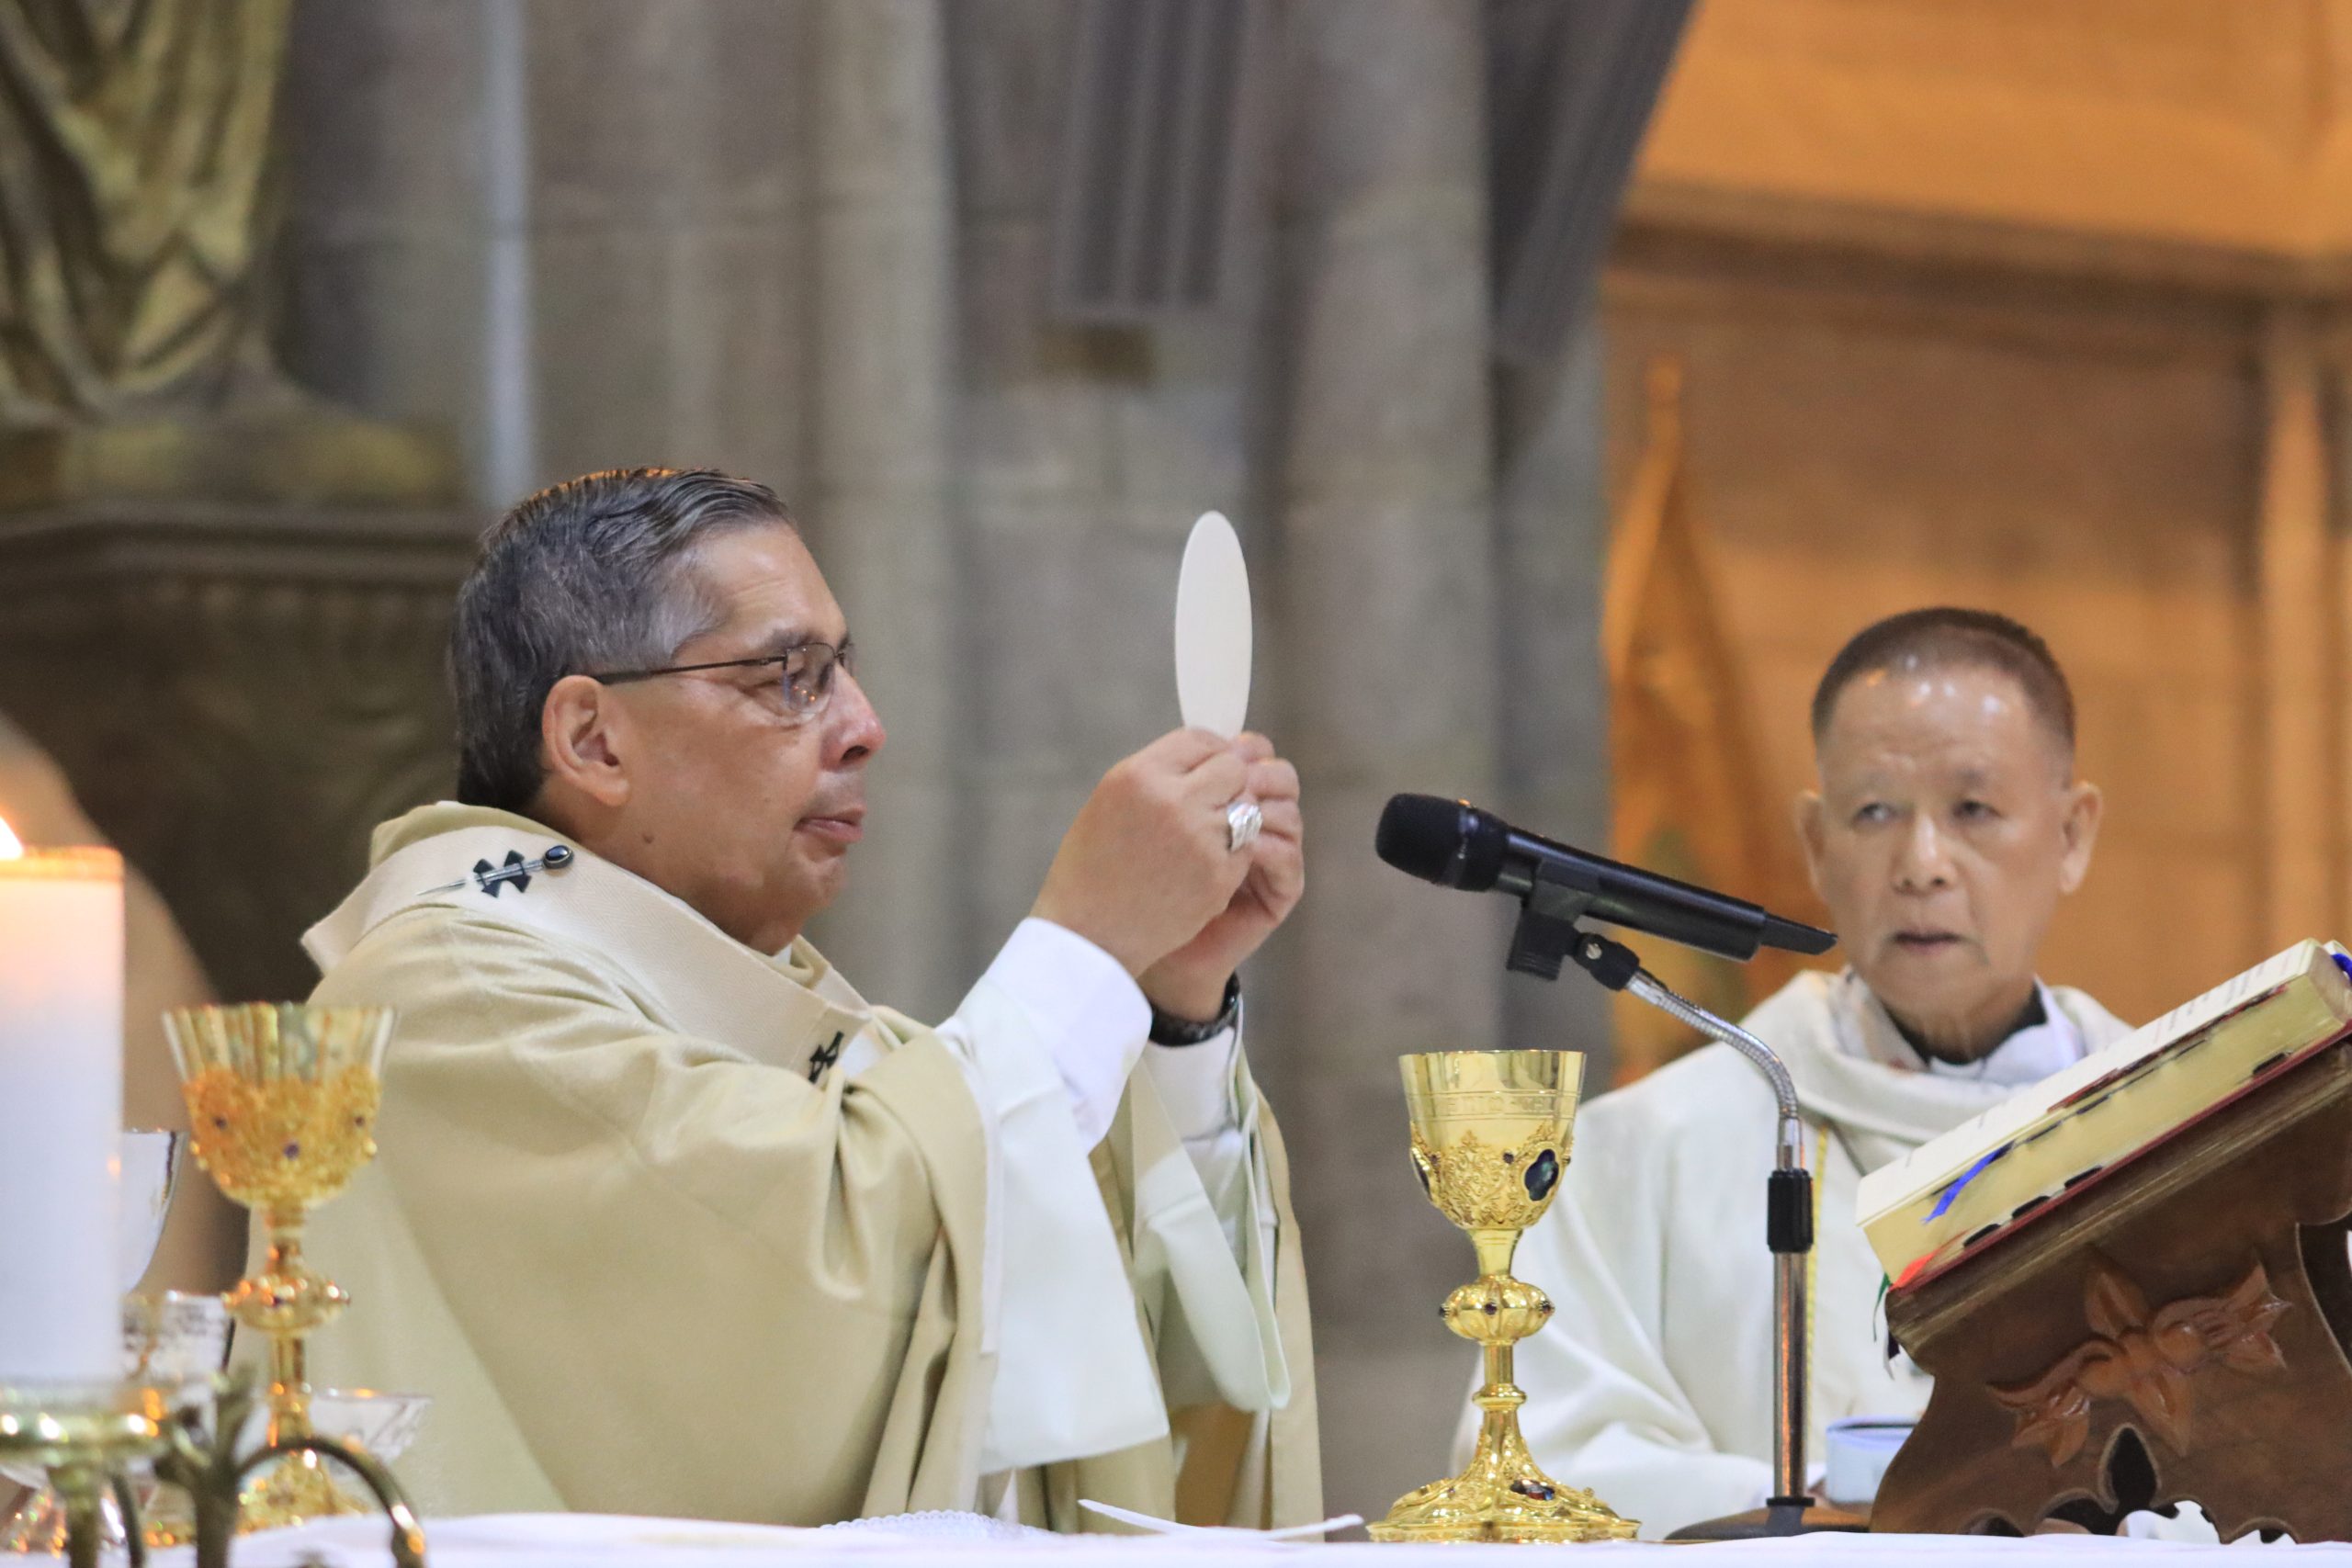 ACIPRENSA – Arcivescovo di Quito: Il Cuore trafitto di Gesù guarisce l’odio e la violenza.